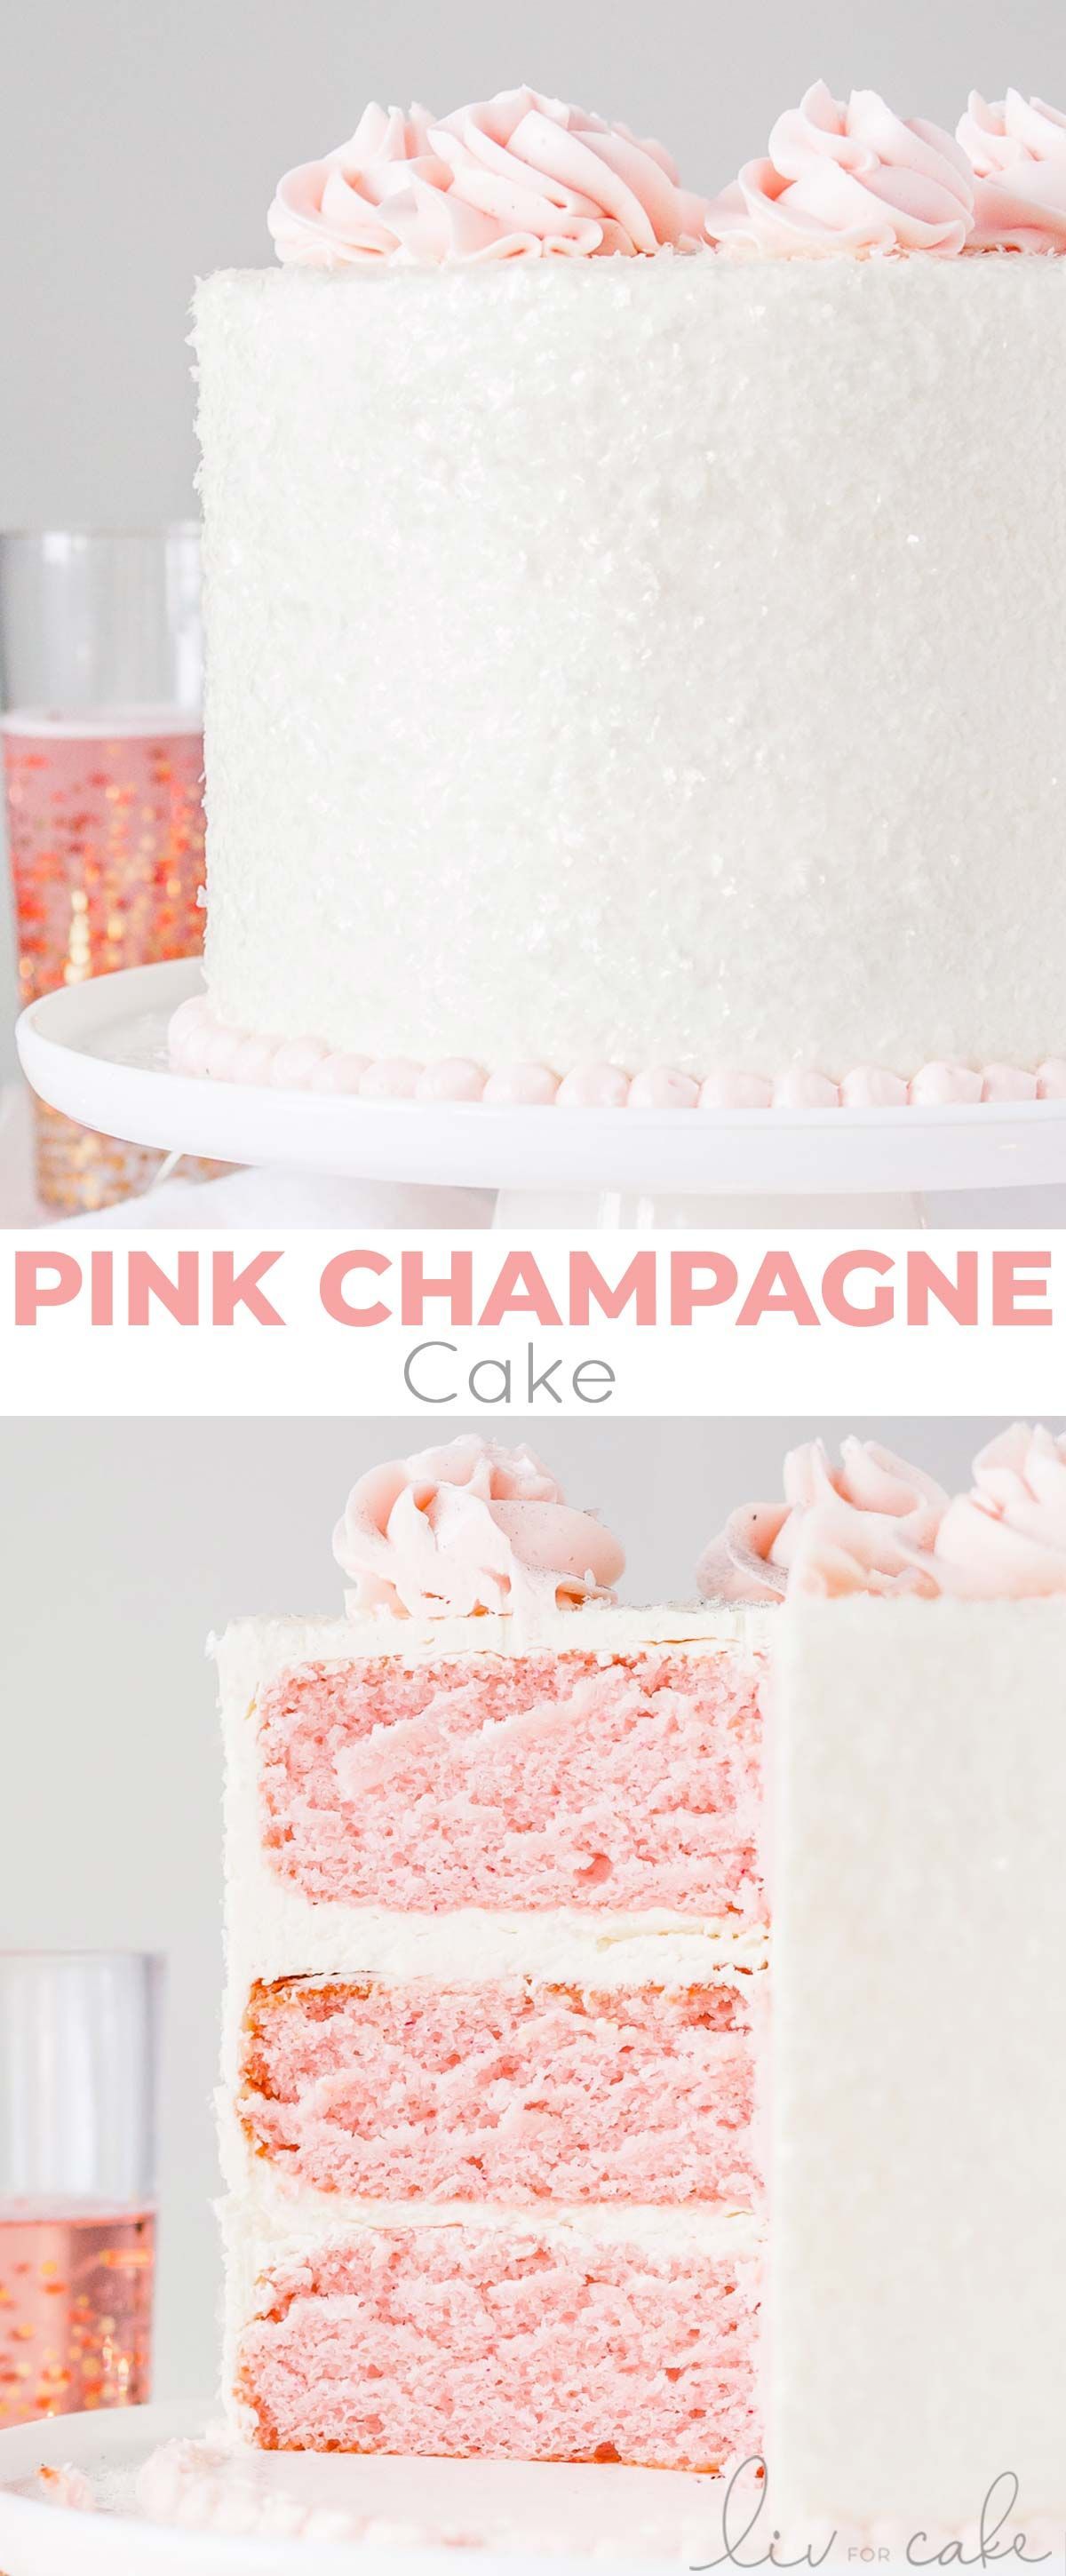 18 cake Pink yum yum ideas